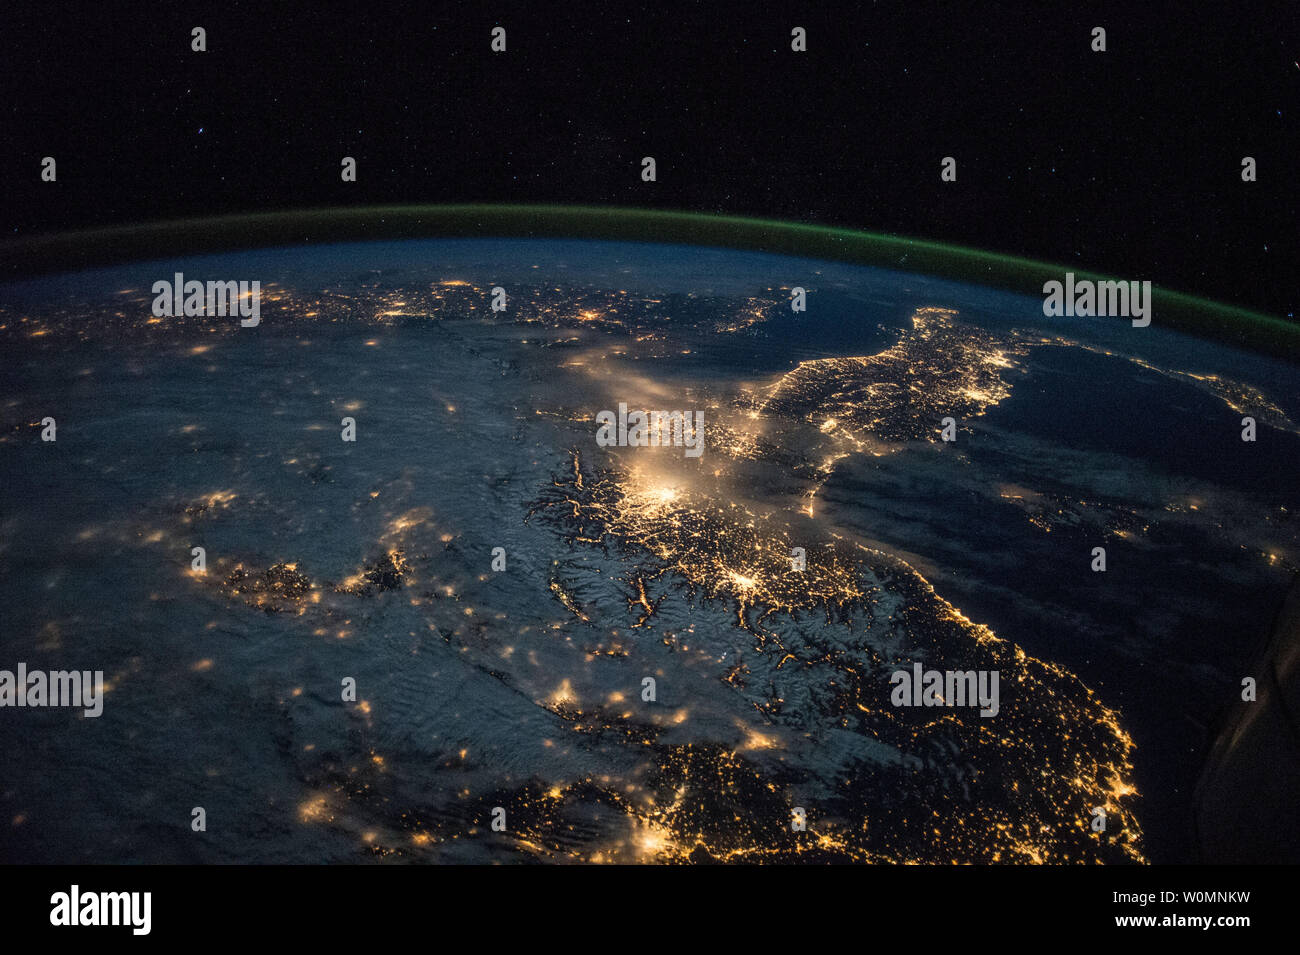 L'observation de la terre prise le 28 mars 2015 au cours d'une nuit, col de l'Espagne et l'Italie par l'équipage de l'expédition 43 à bord de la Station spatiale internationale. NASA/UPI Banque D'Images